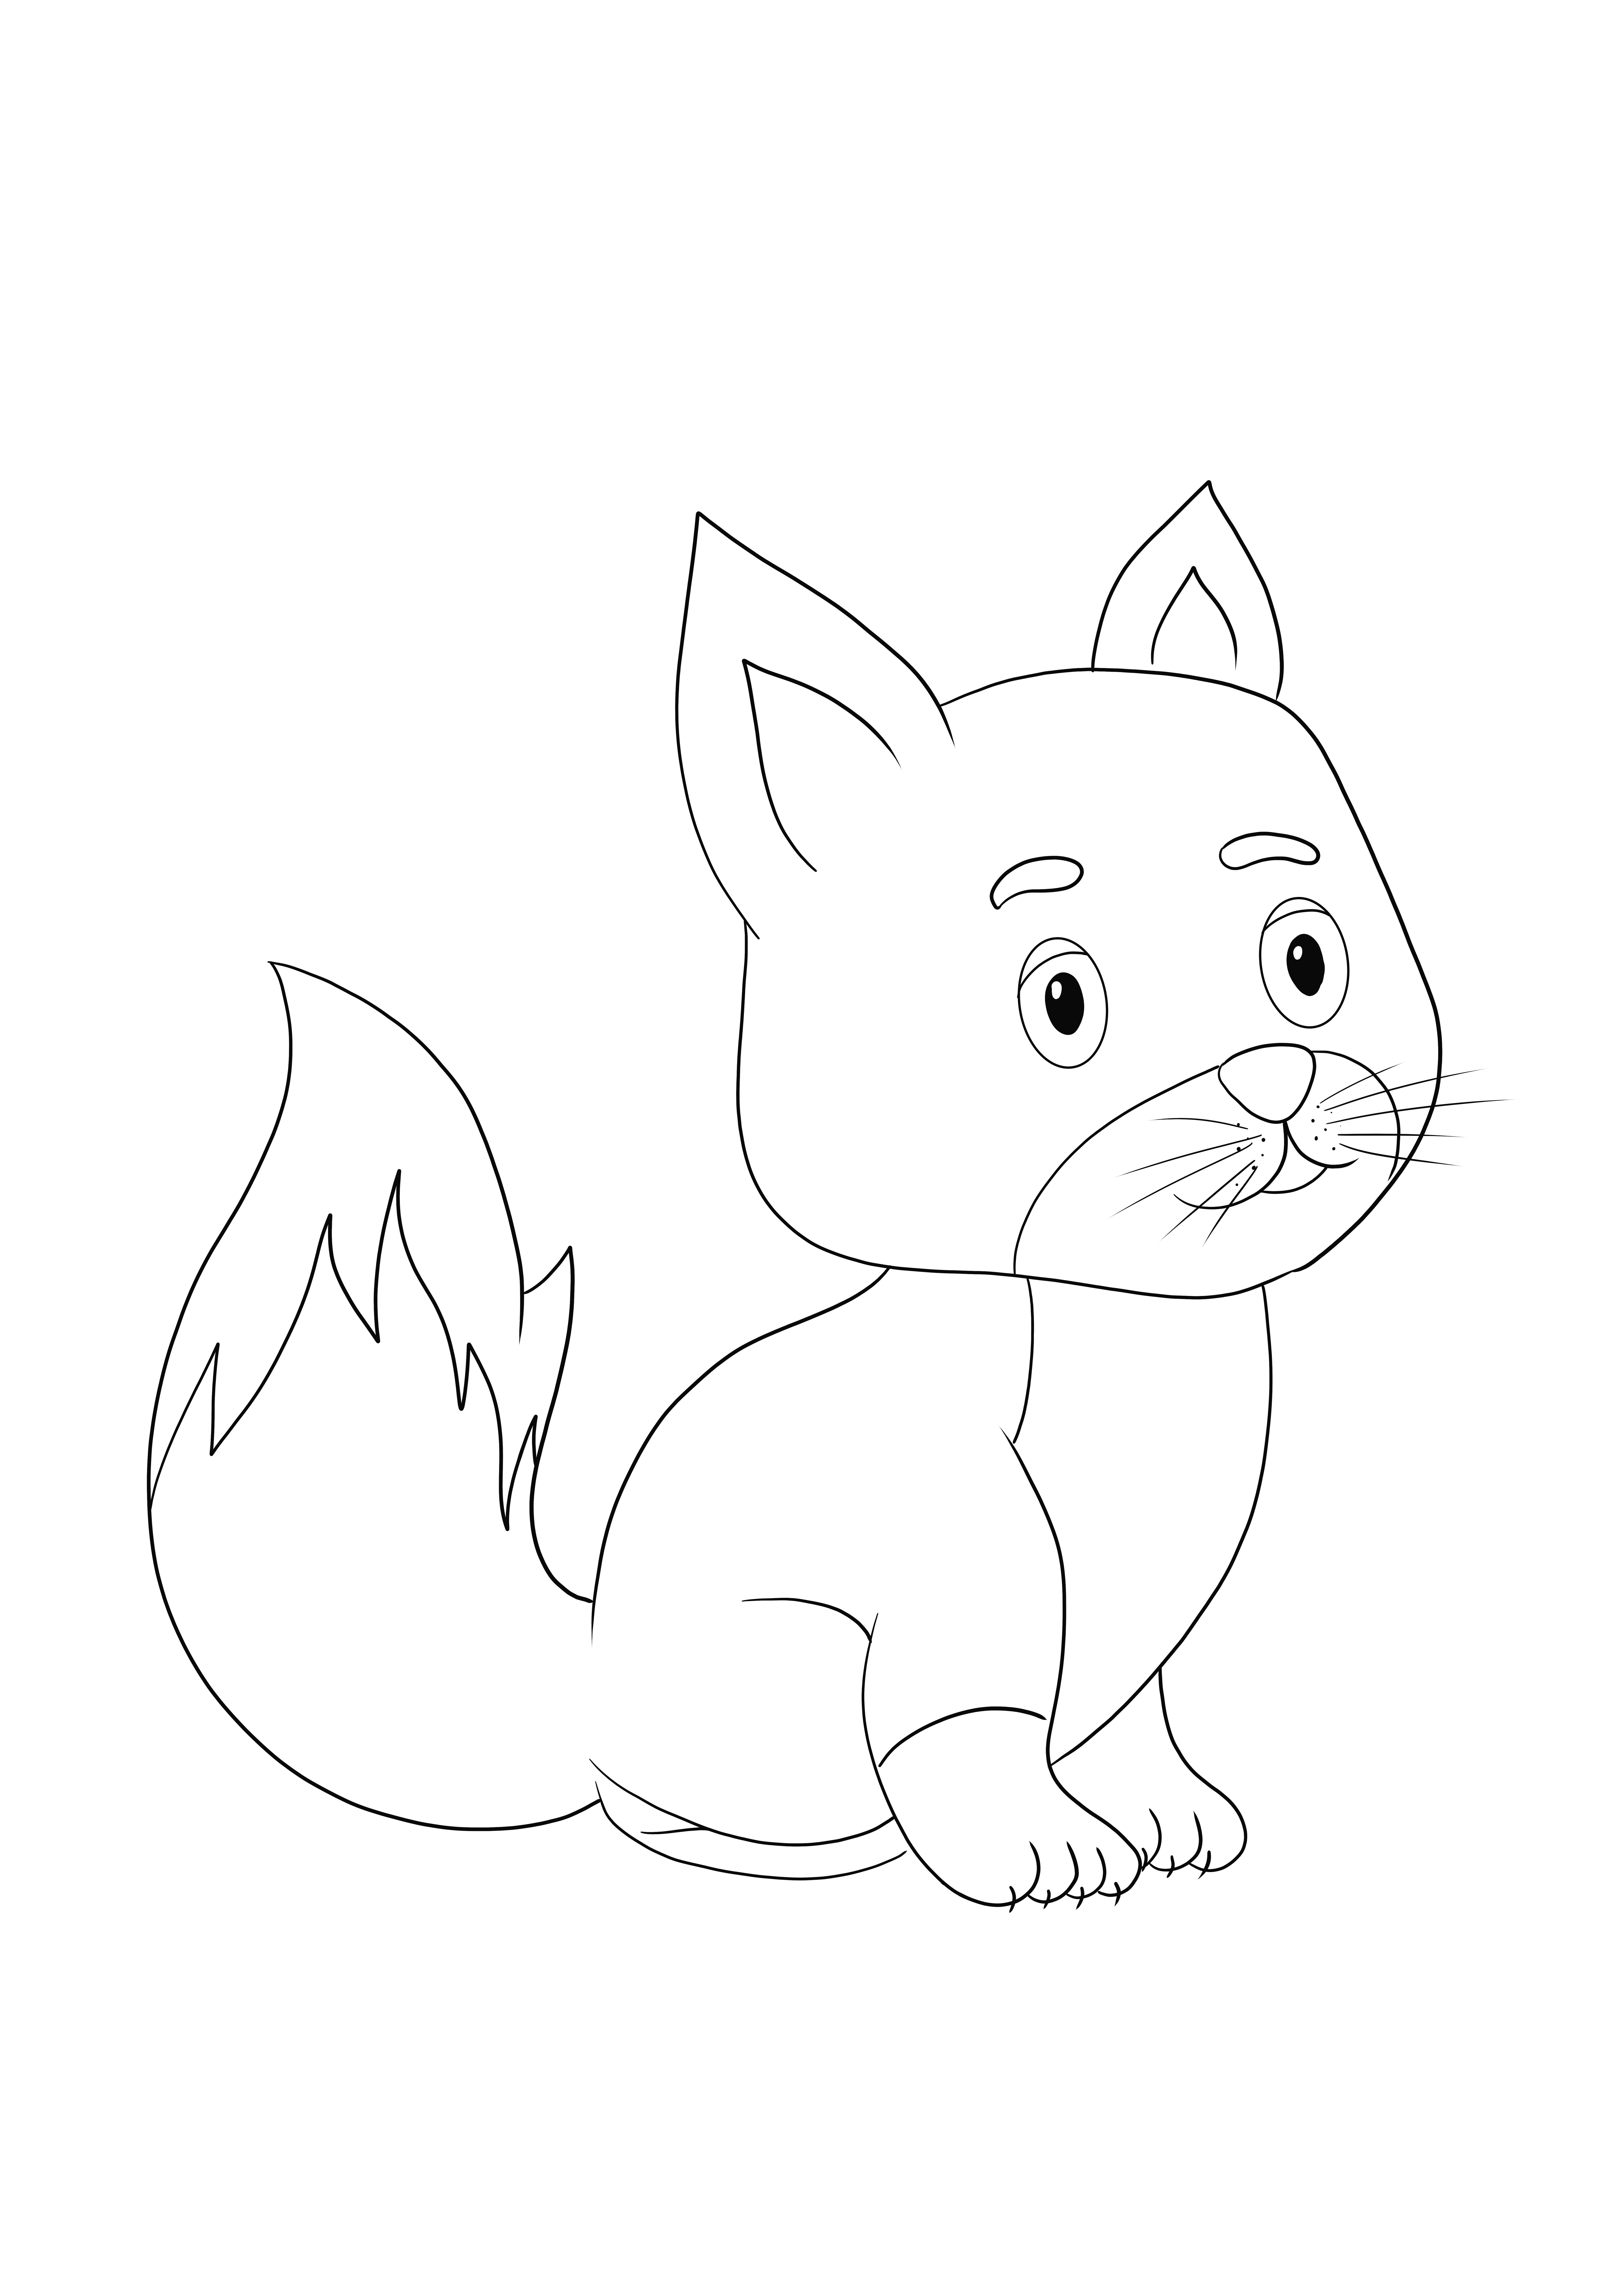 Disegni da colorare di Cute Baby Fox da stampare o scaricare gratuitamente per i bambini